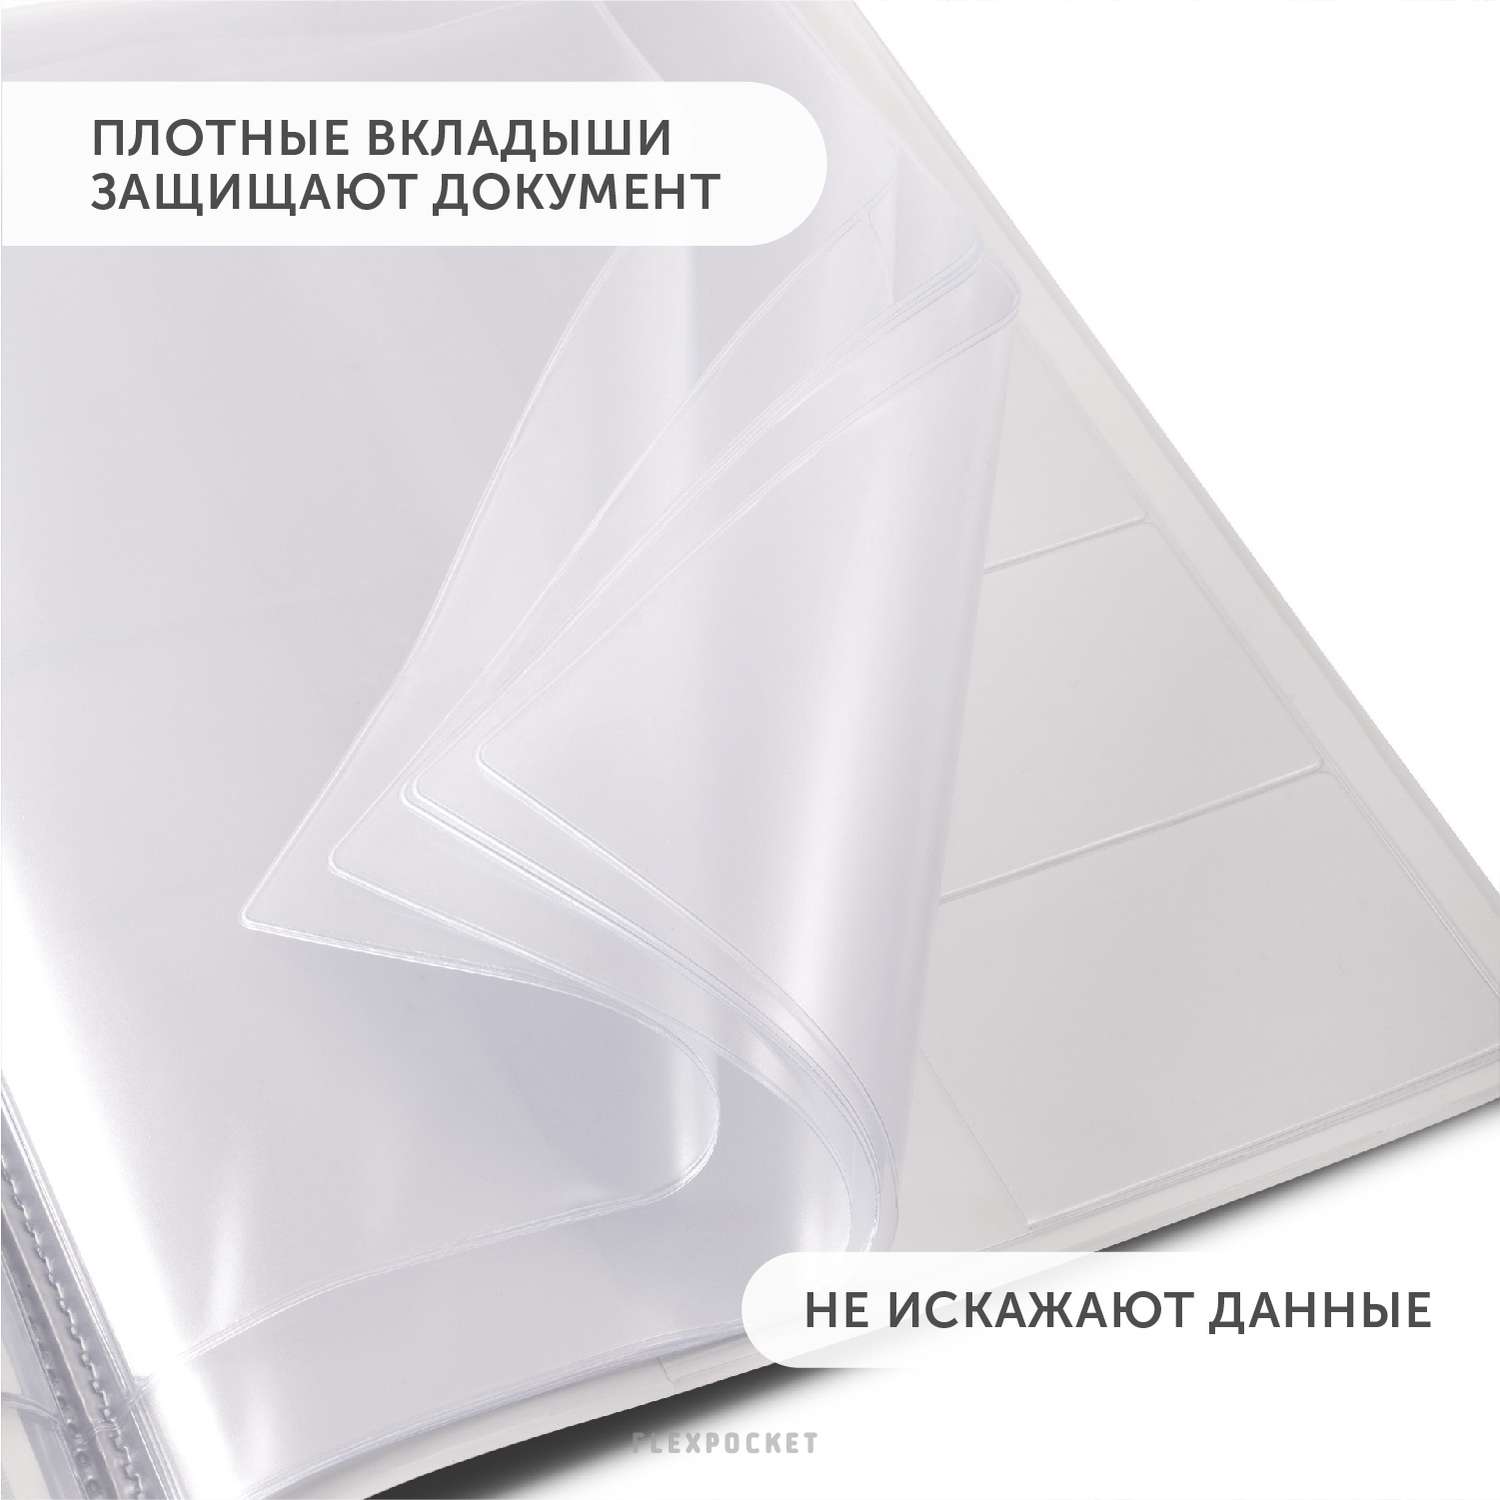 Папка для семейных документов Flexpocket из ПВХ в подарочной упаковке формат А4 - фото 7